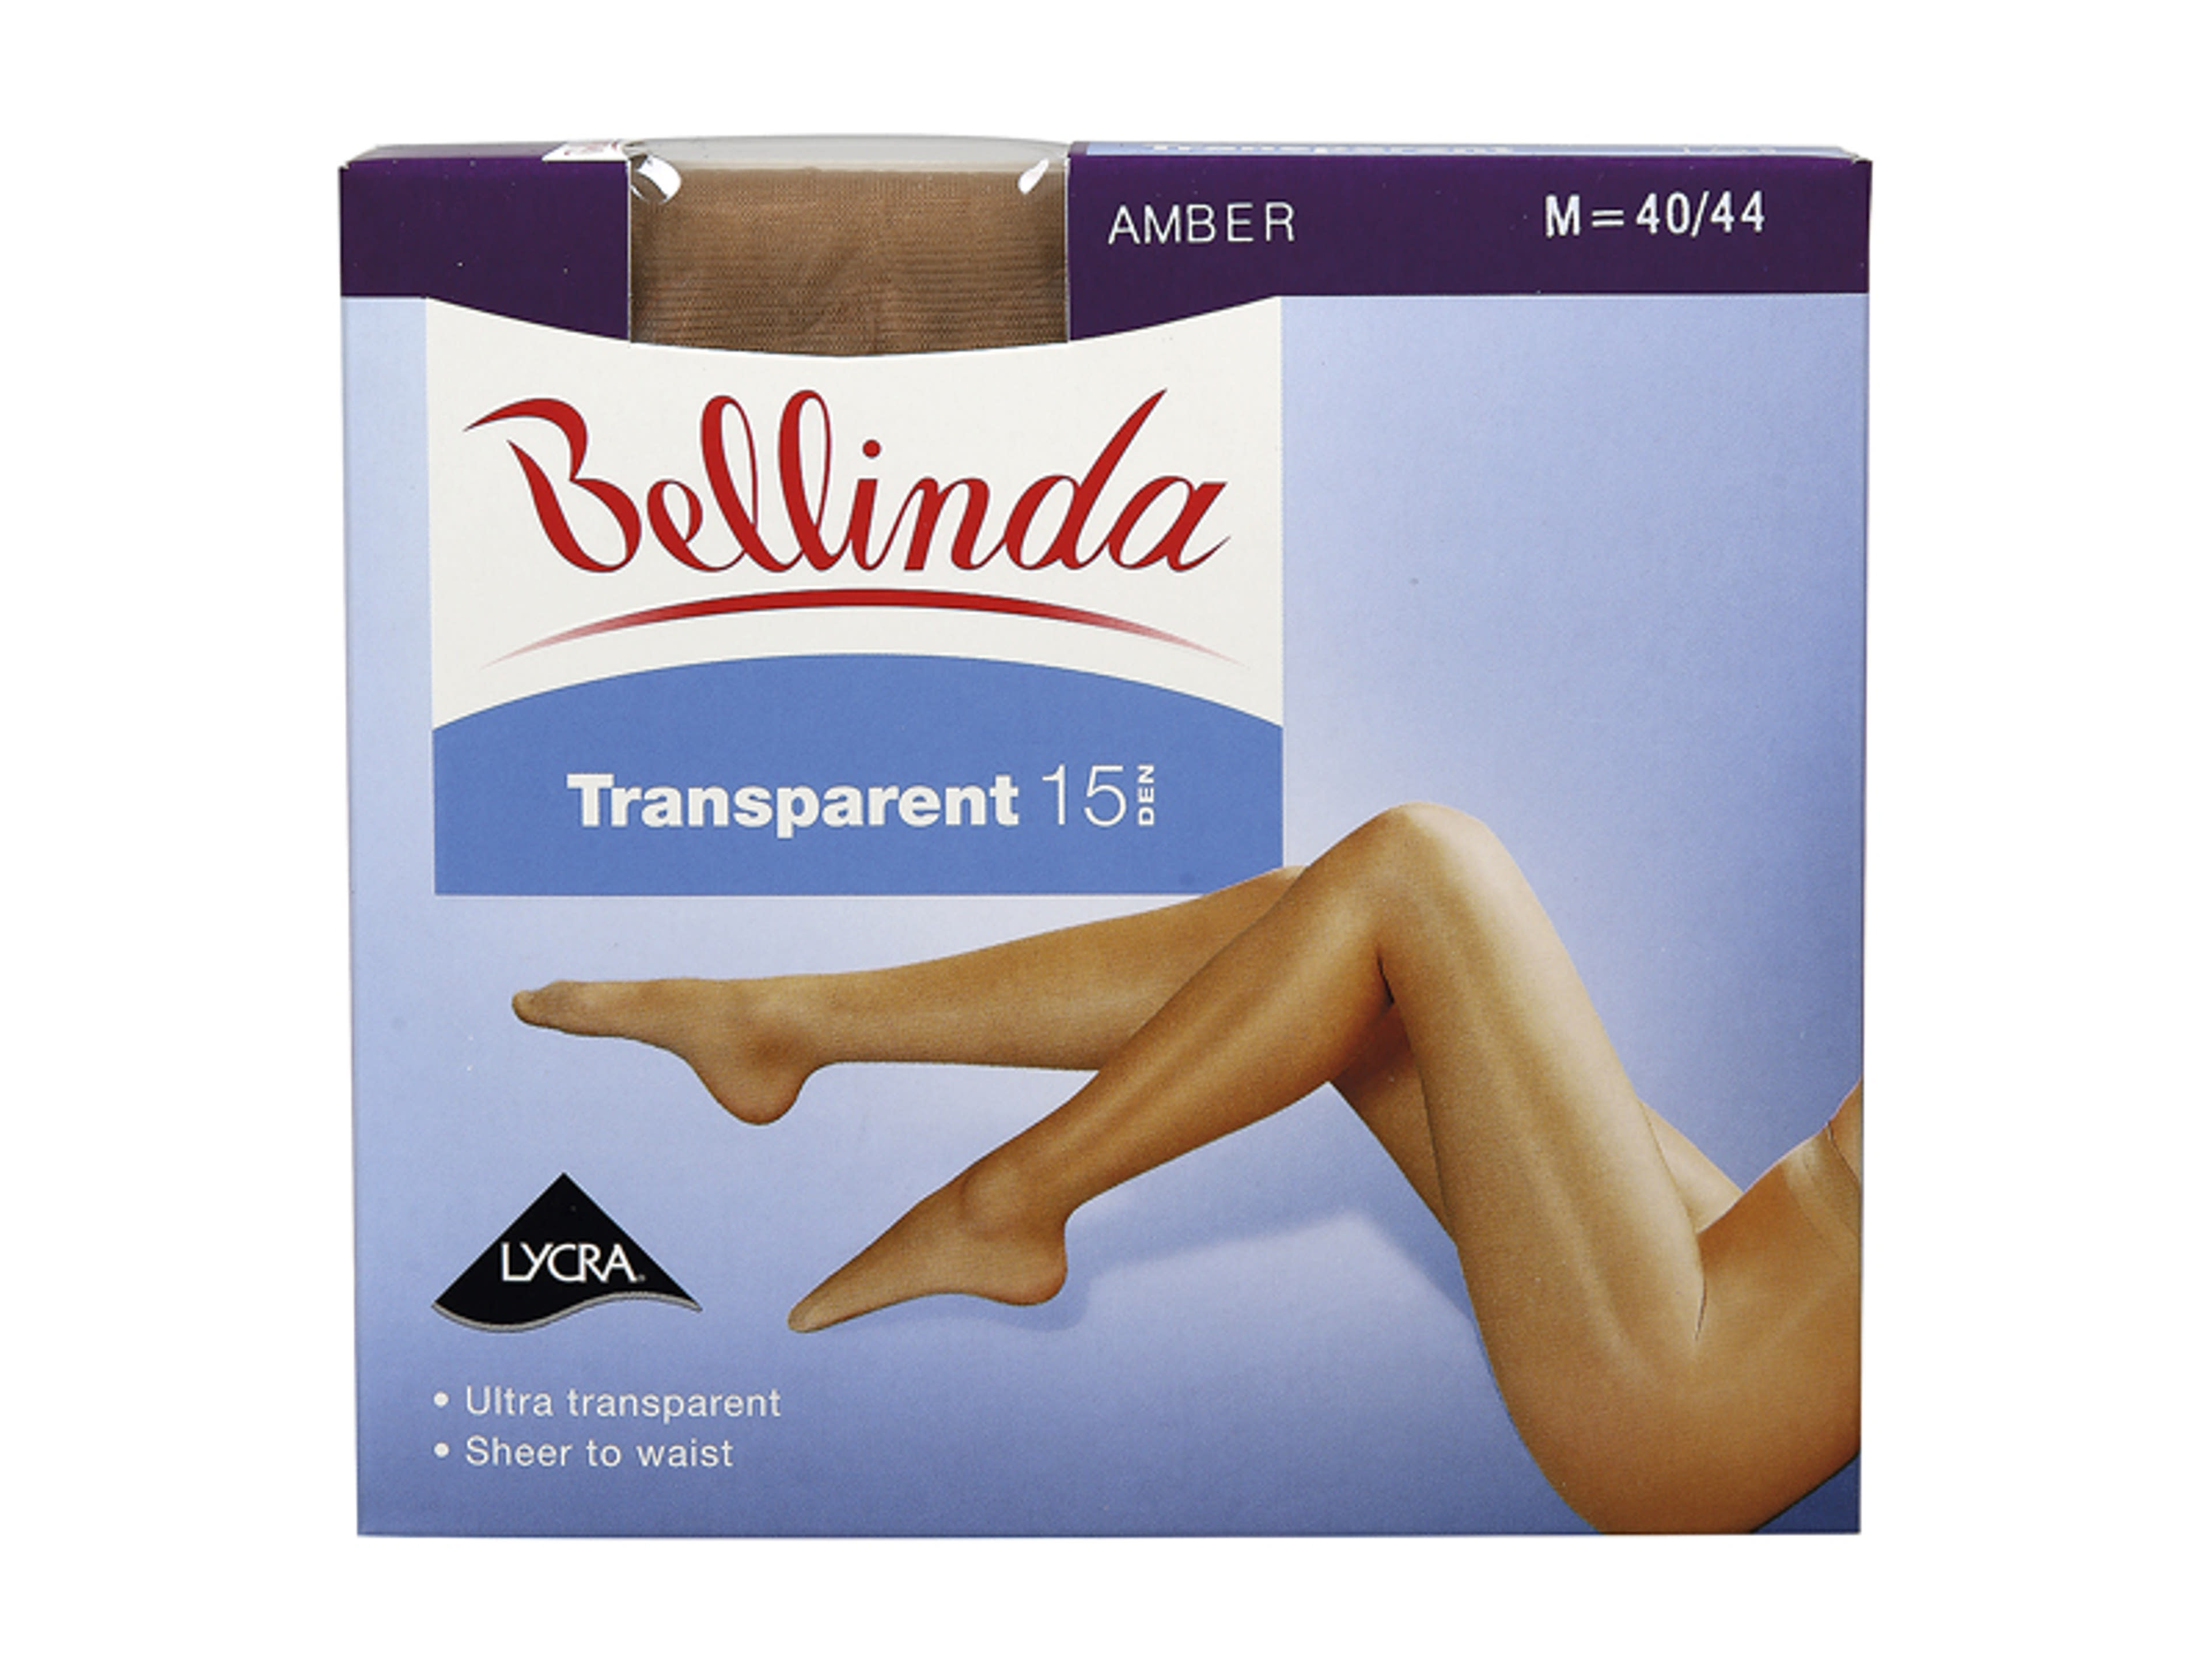 Bellinda Transparent 15 Den Amber M Harisnya - 1 db-1